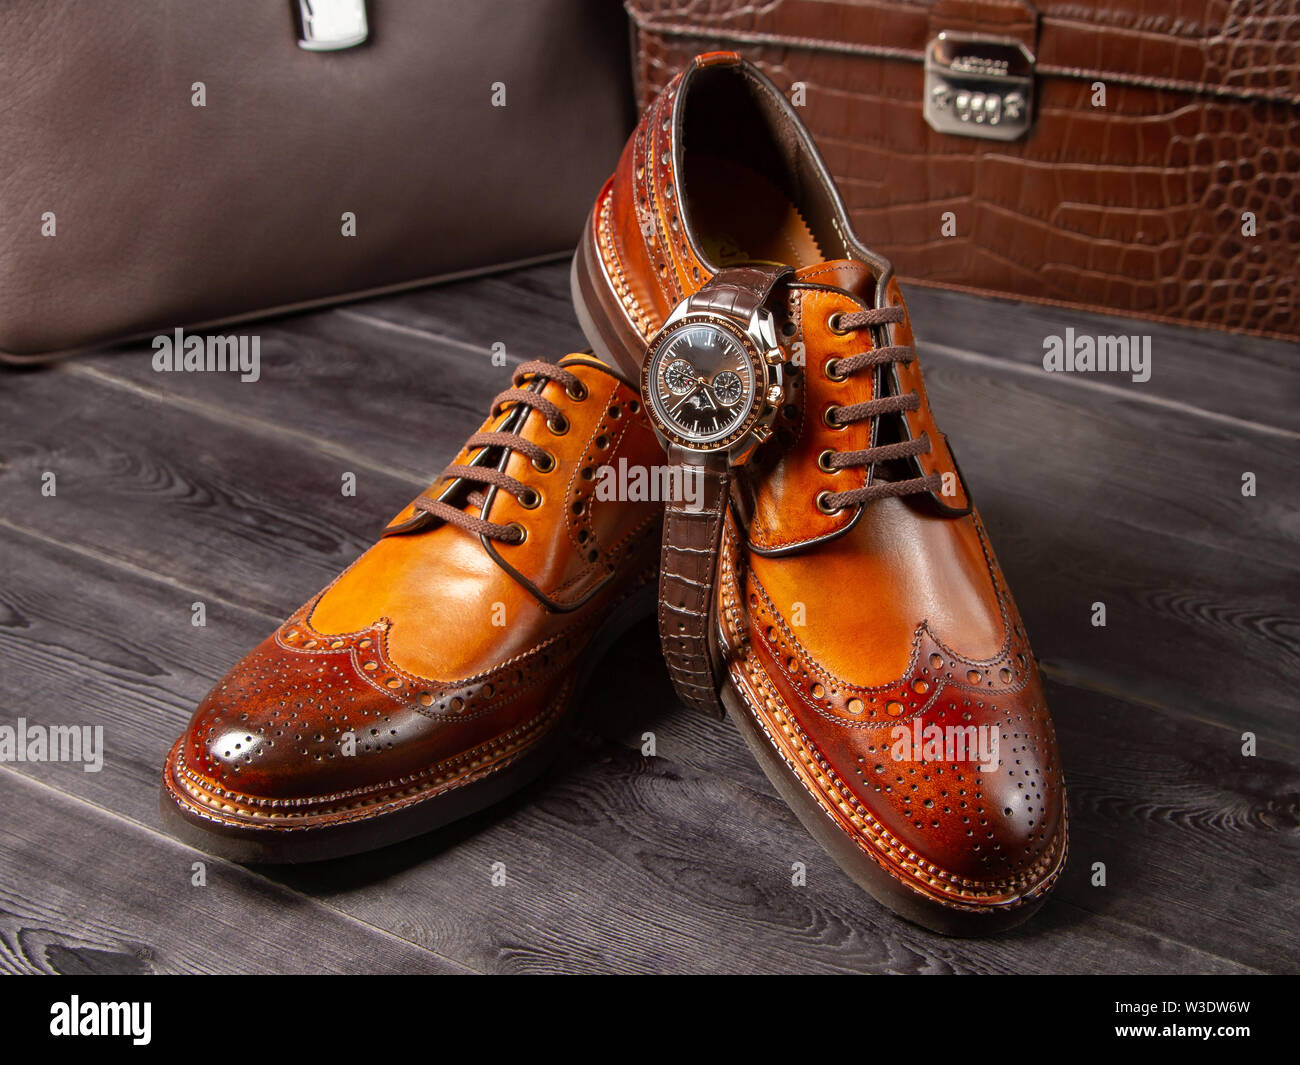 Classic zapatos de hombre de una sombra de color marrón claro, con el telón de fondo los carteras de cuero. Zapatos artesanales cerca. Boss zapatos Fotografía de stock -